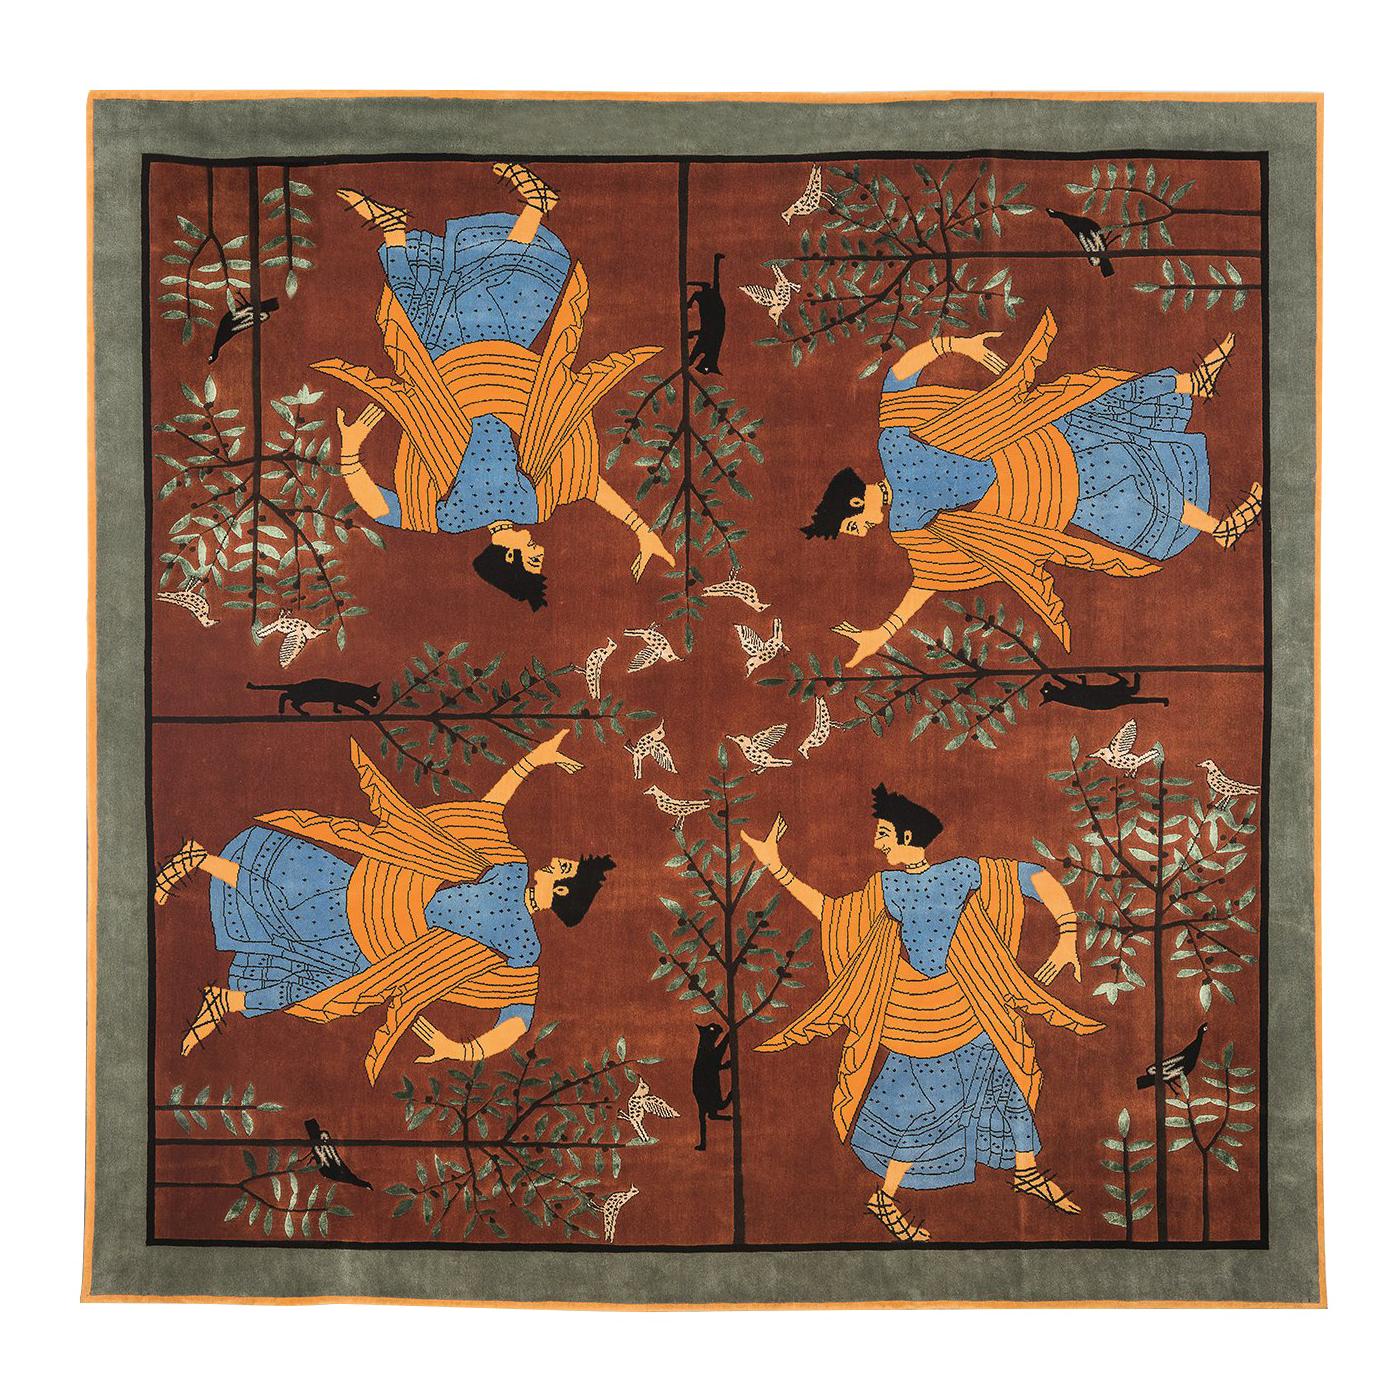 Dalle Gioie Degli Etruschi N. 4 Teppich von Linde Burkhardt